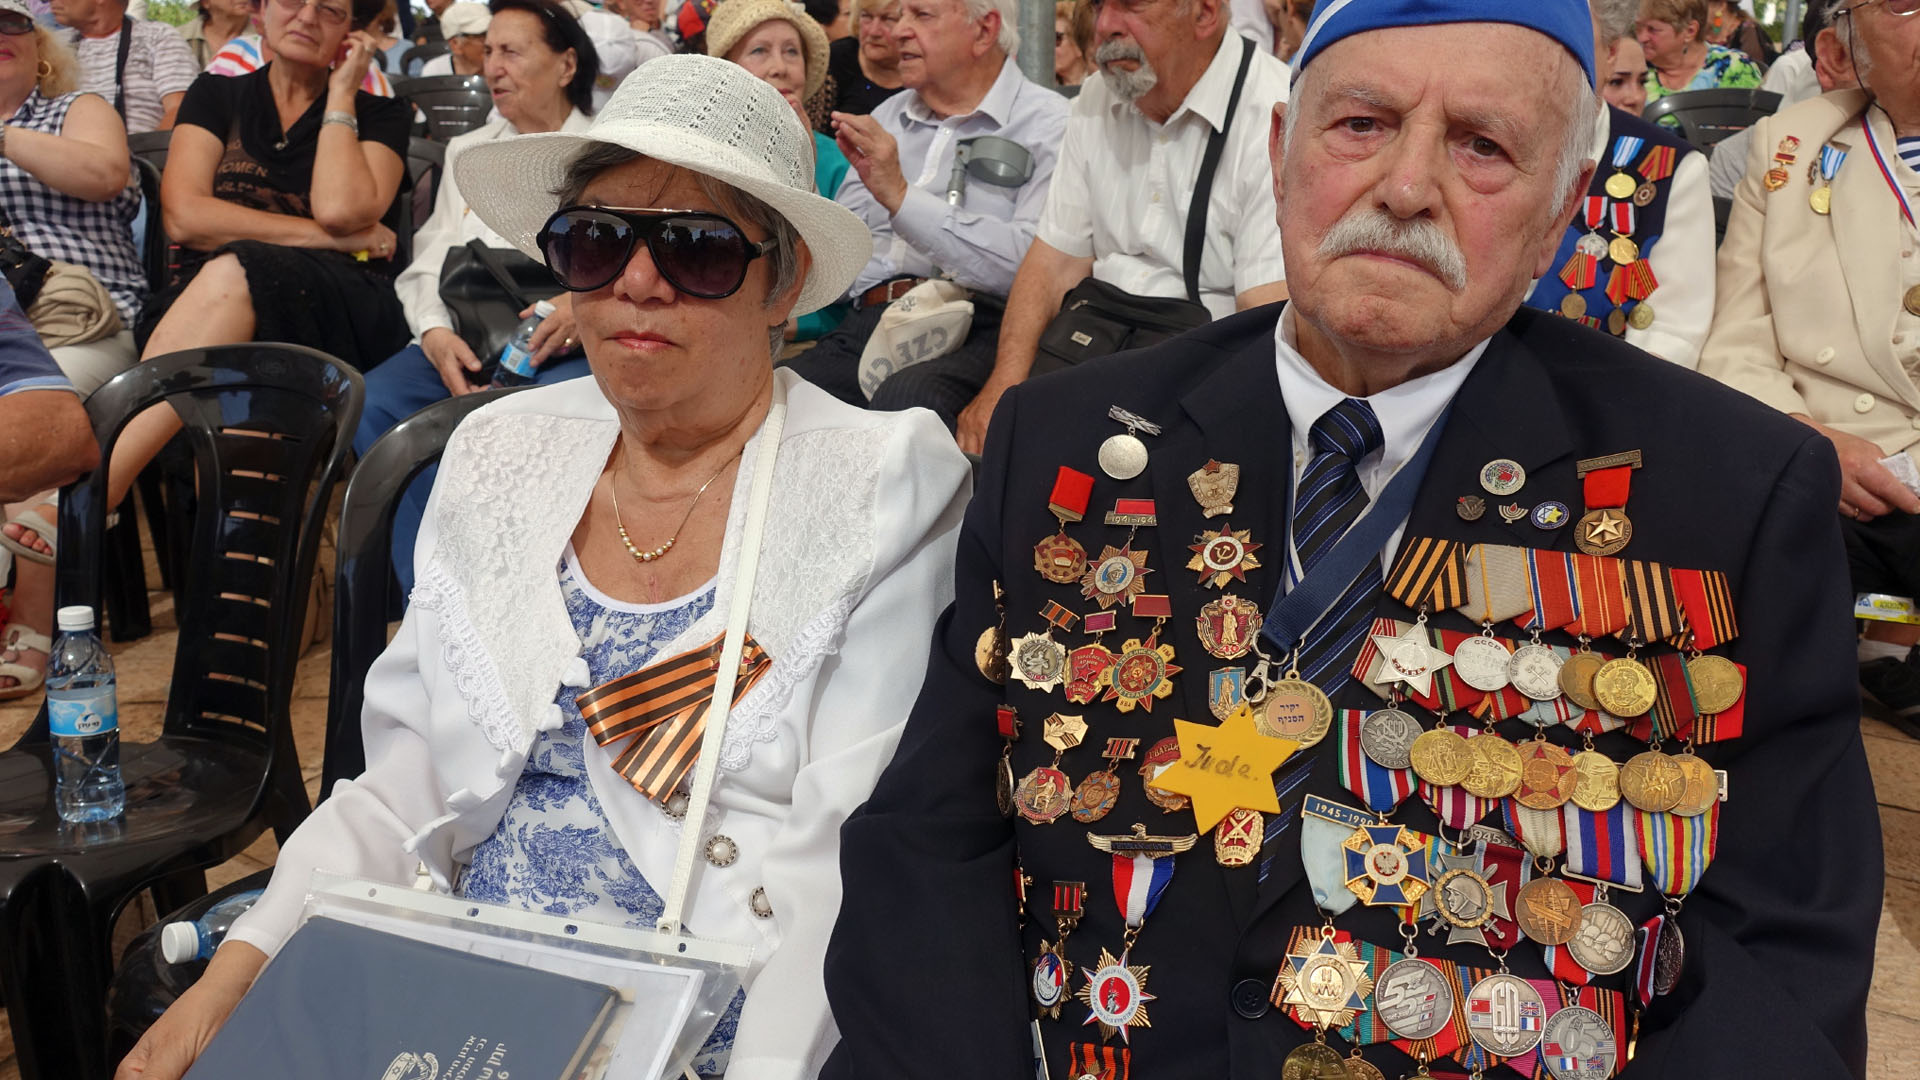 Neben vielen Medaillen trägt der Kriegsveteran Max Privler einen Judenstern aus Plastik als Erinnerung an die Zeit im Ghetto Stanislawow